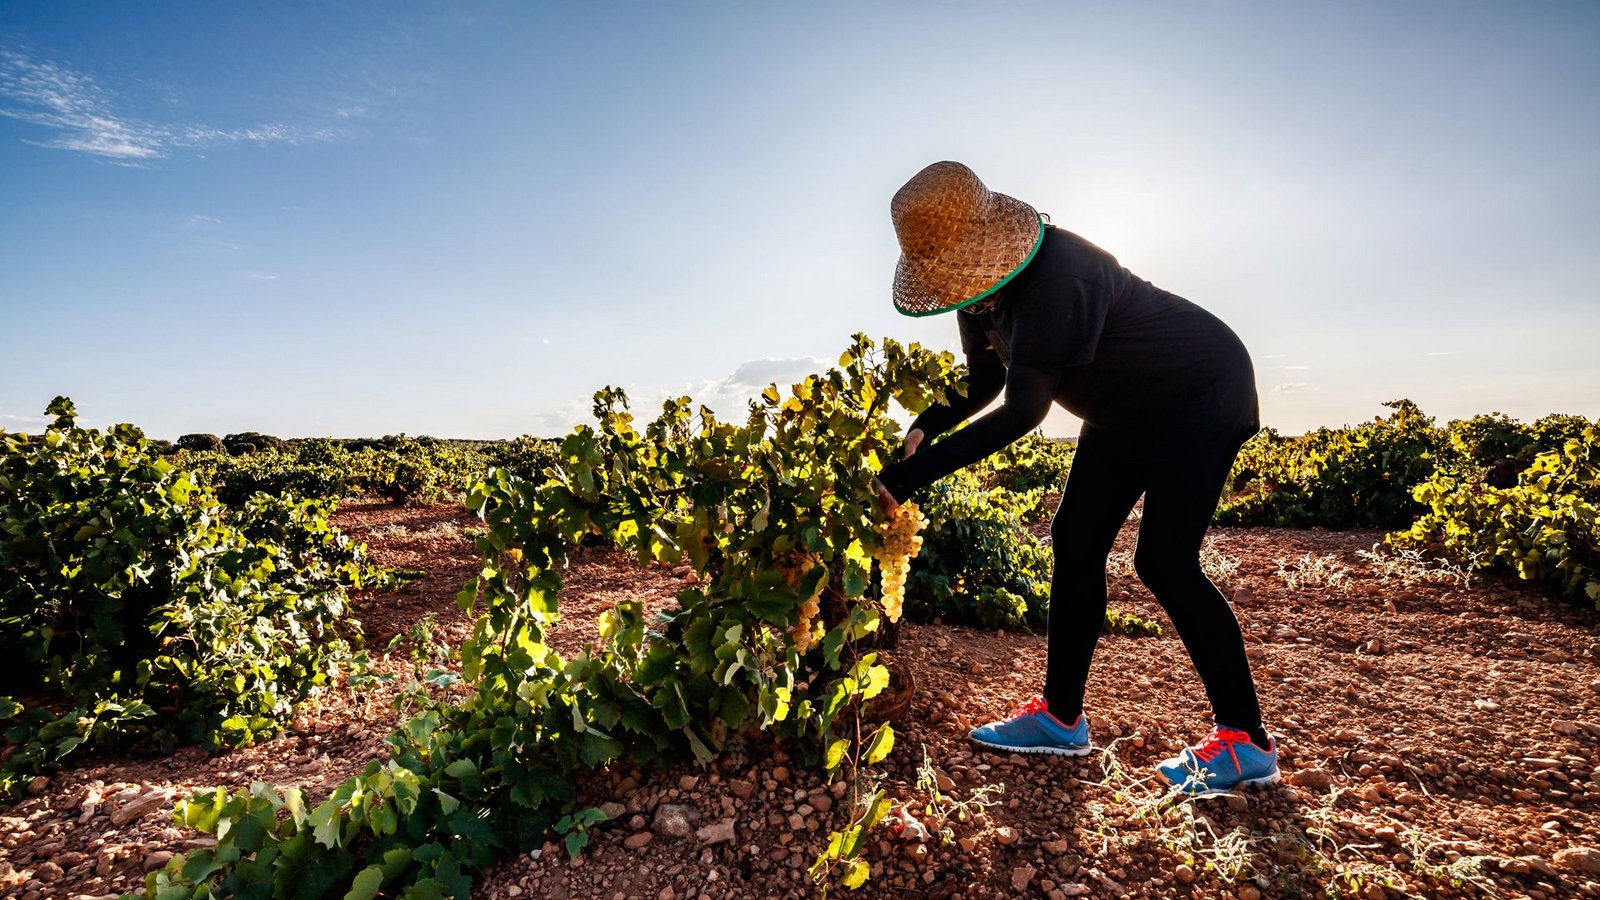 An der künstlichen Bewässerung kommen die Weinbauern in Katalonien derzeit nicht vorbei.Foto: imago//Felipe Tomás Jiménez Ordóñez